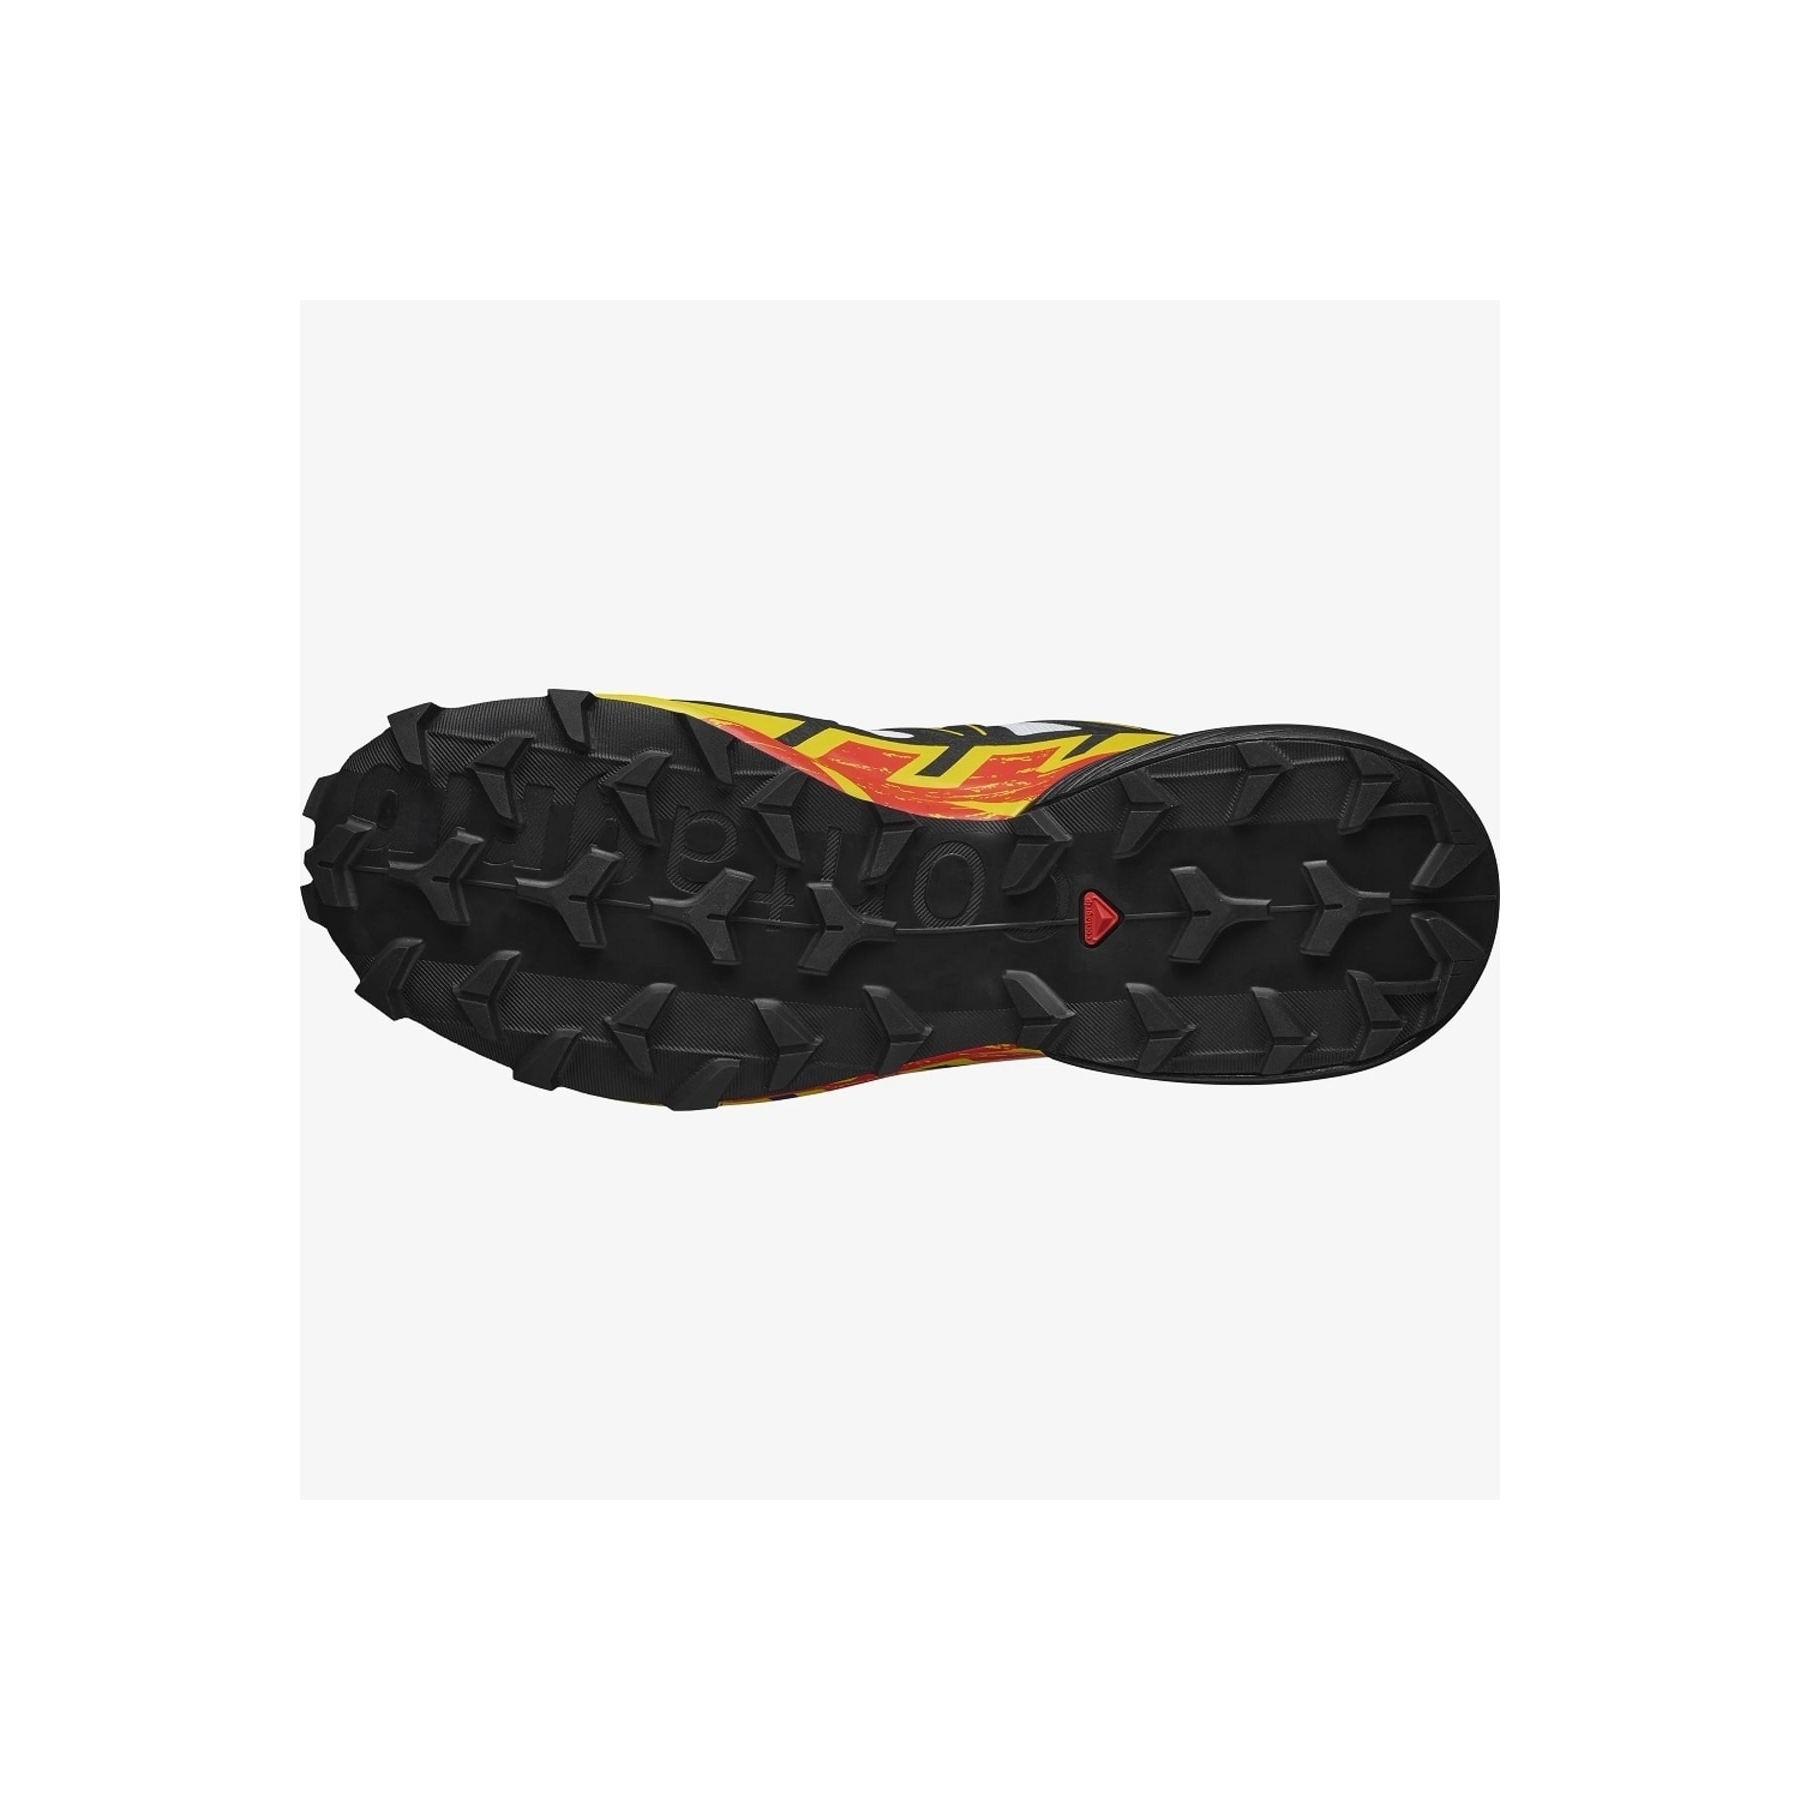 Salomon Speedcross 6 Erkek Outdoor Ayakkabı (L41737800)